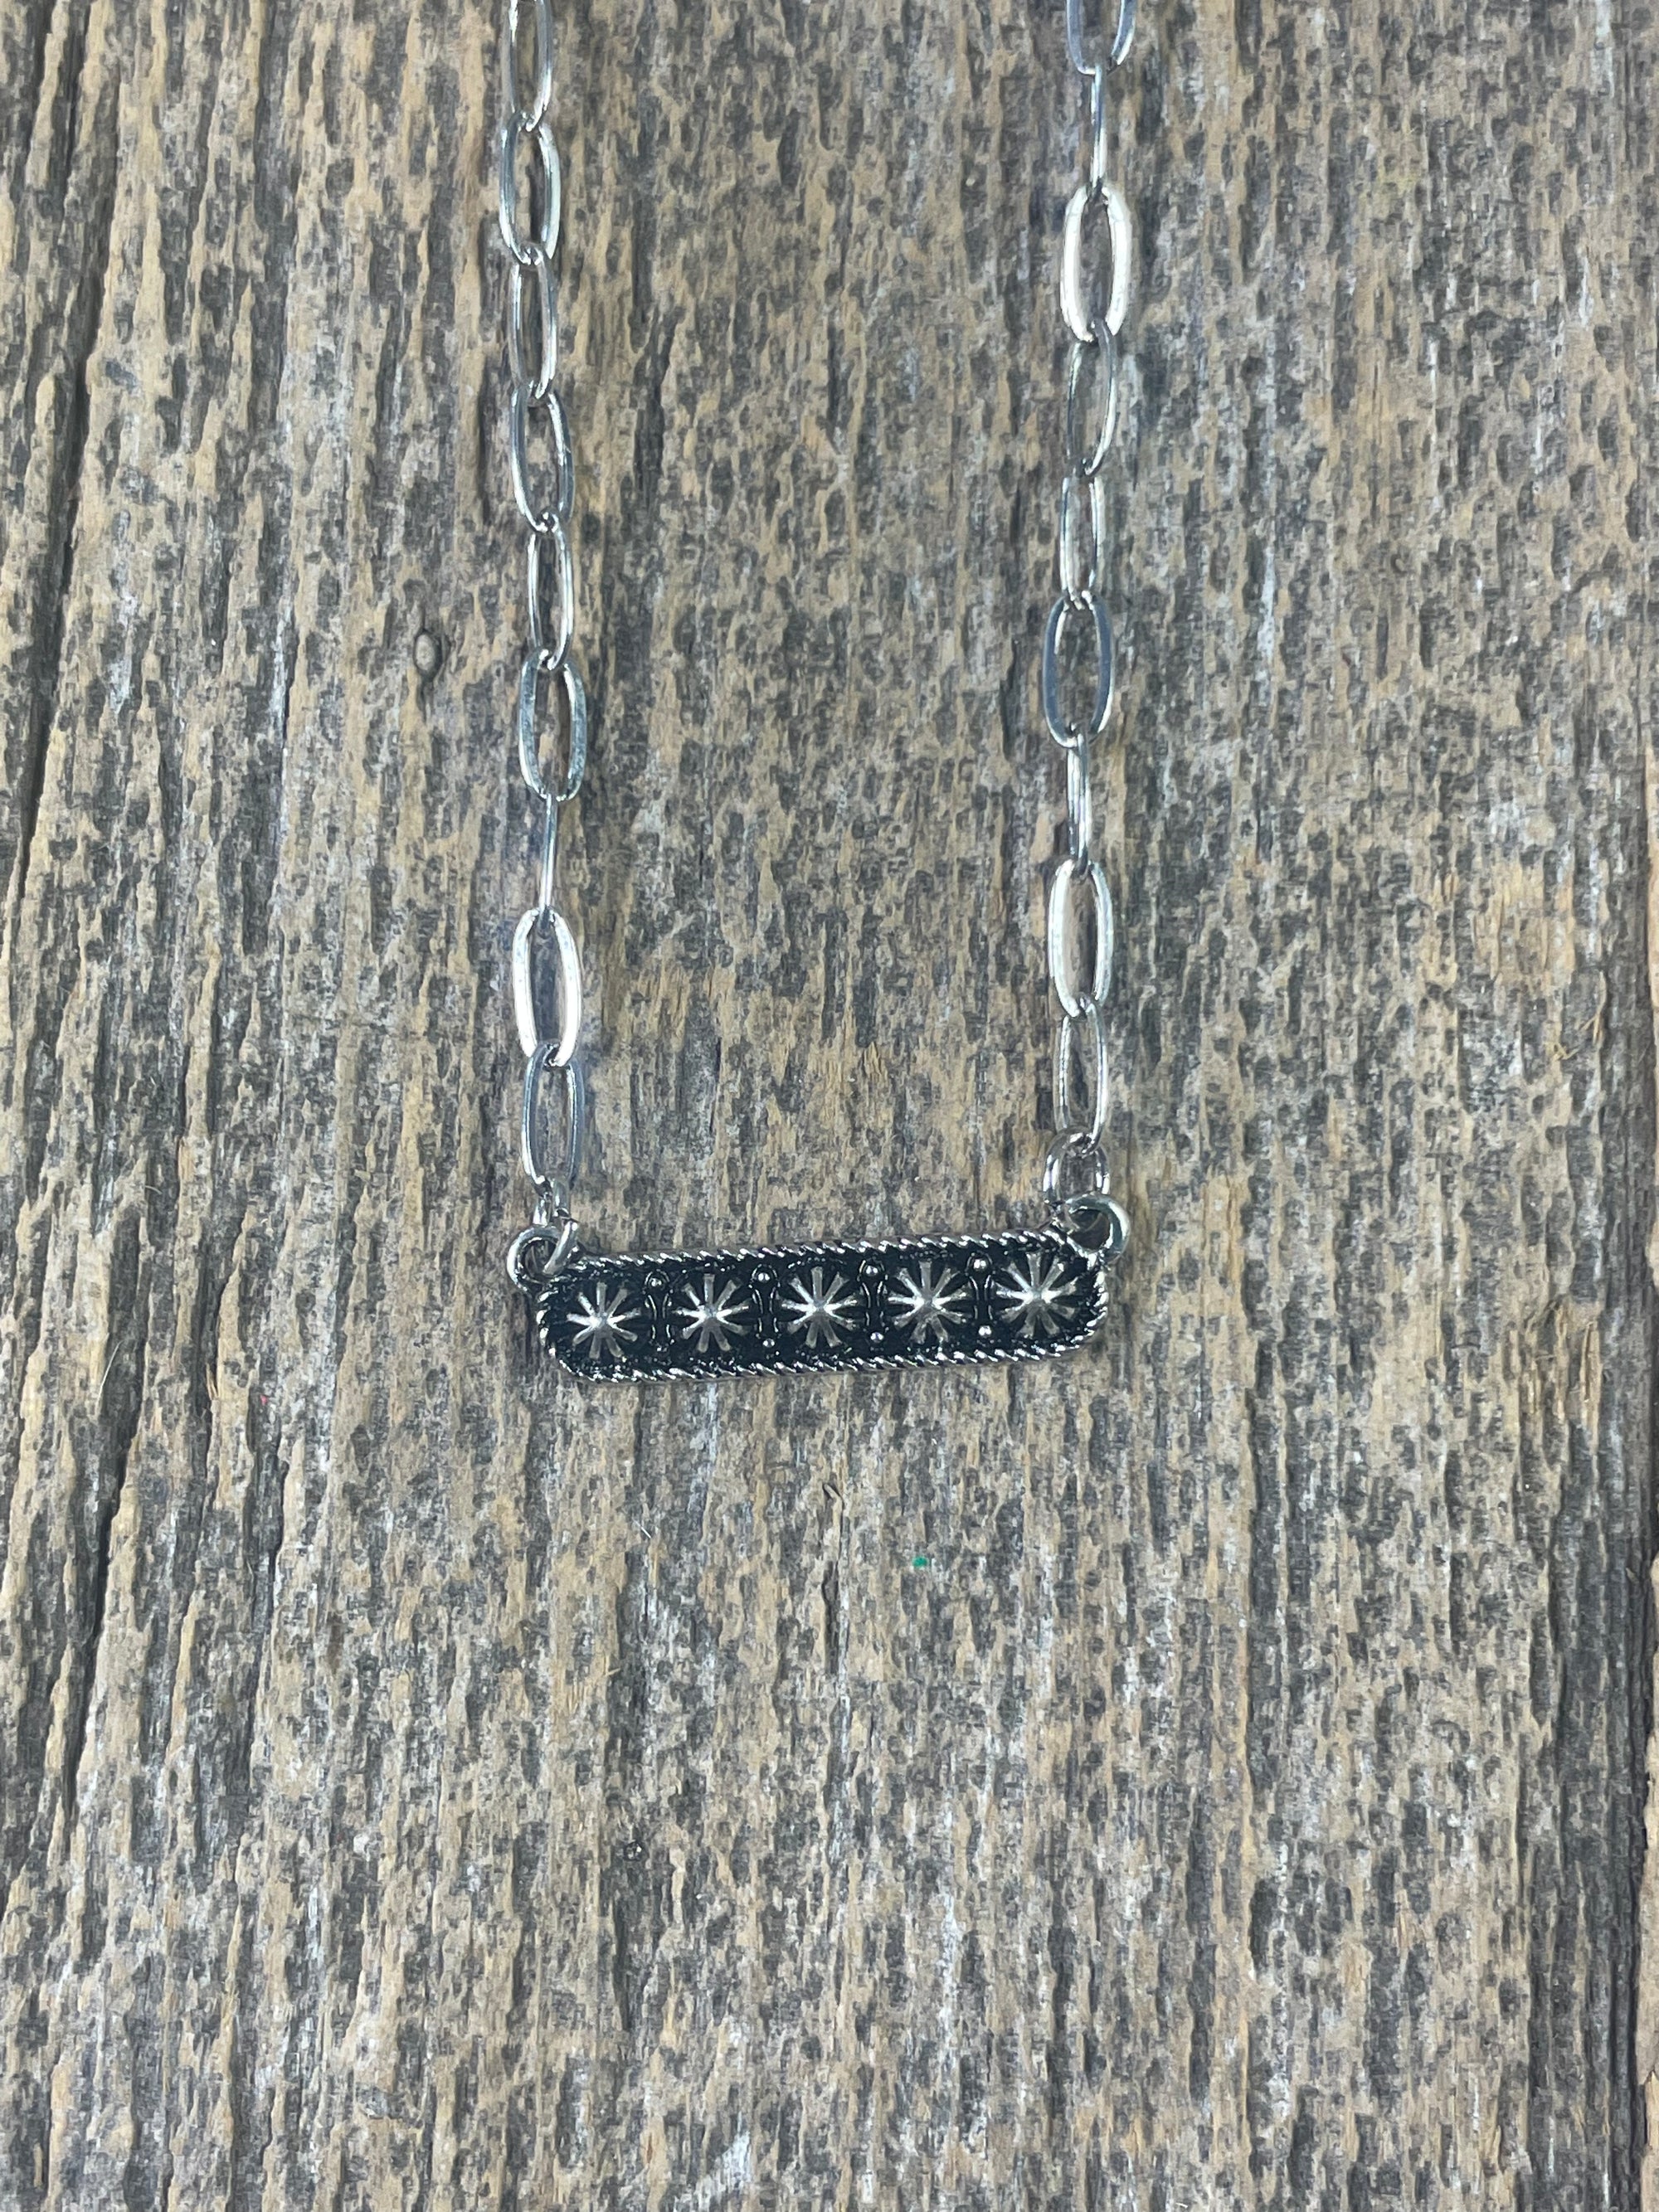 Concho Bar Necklace